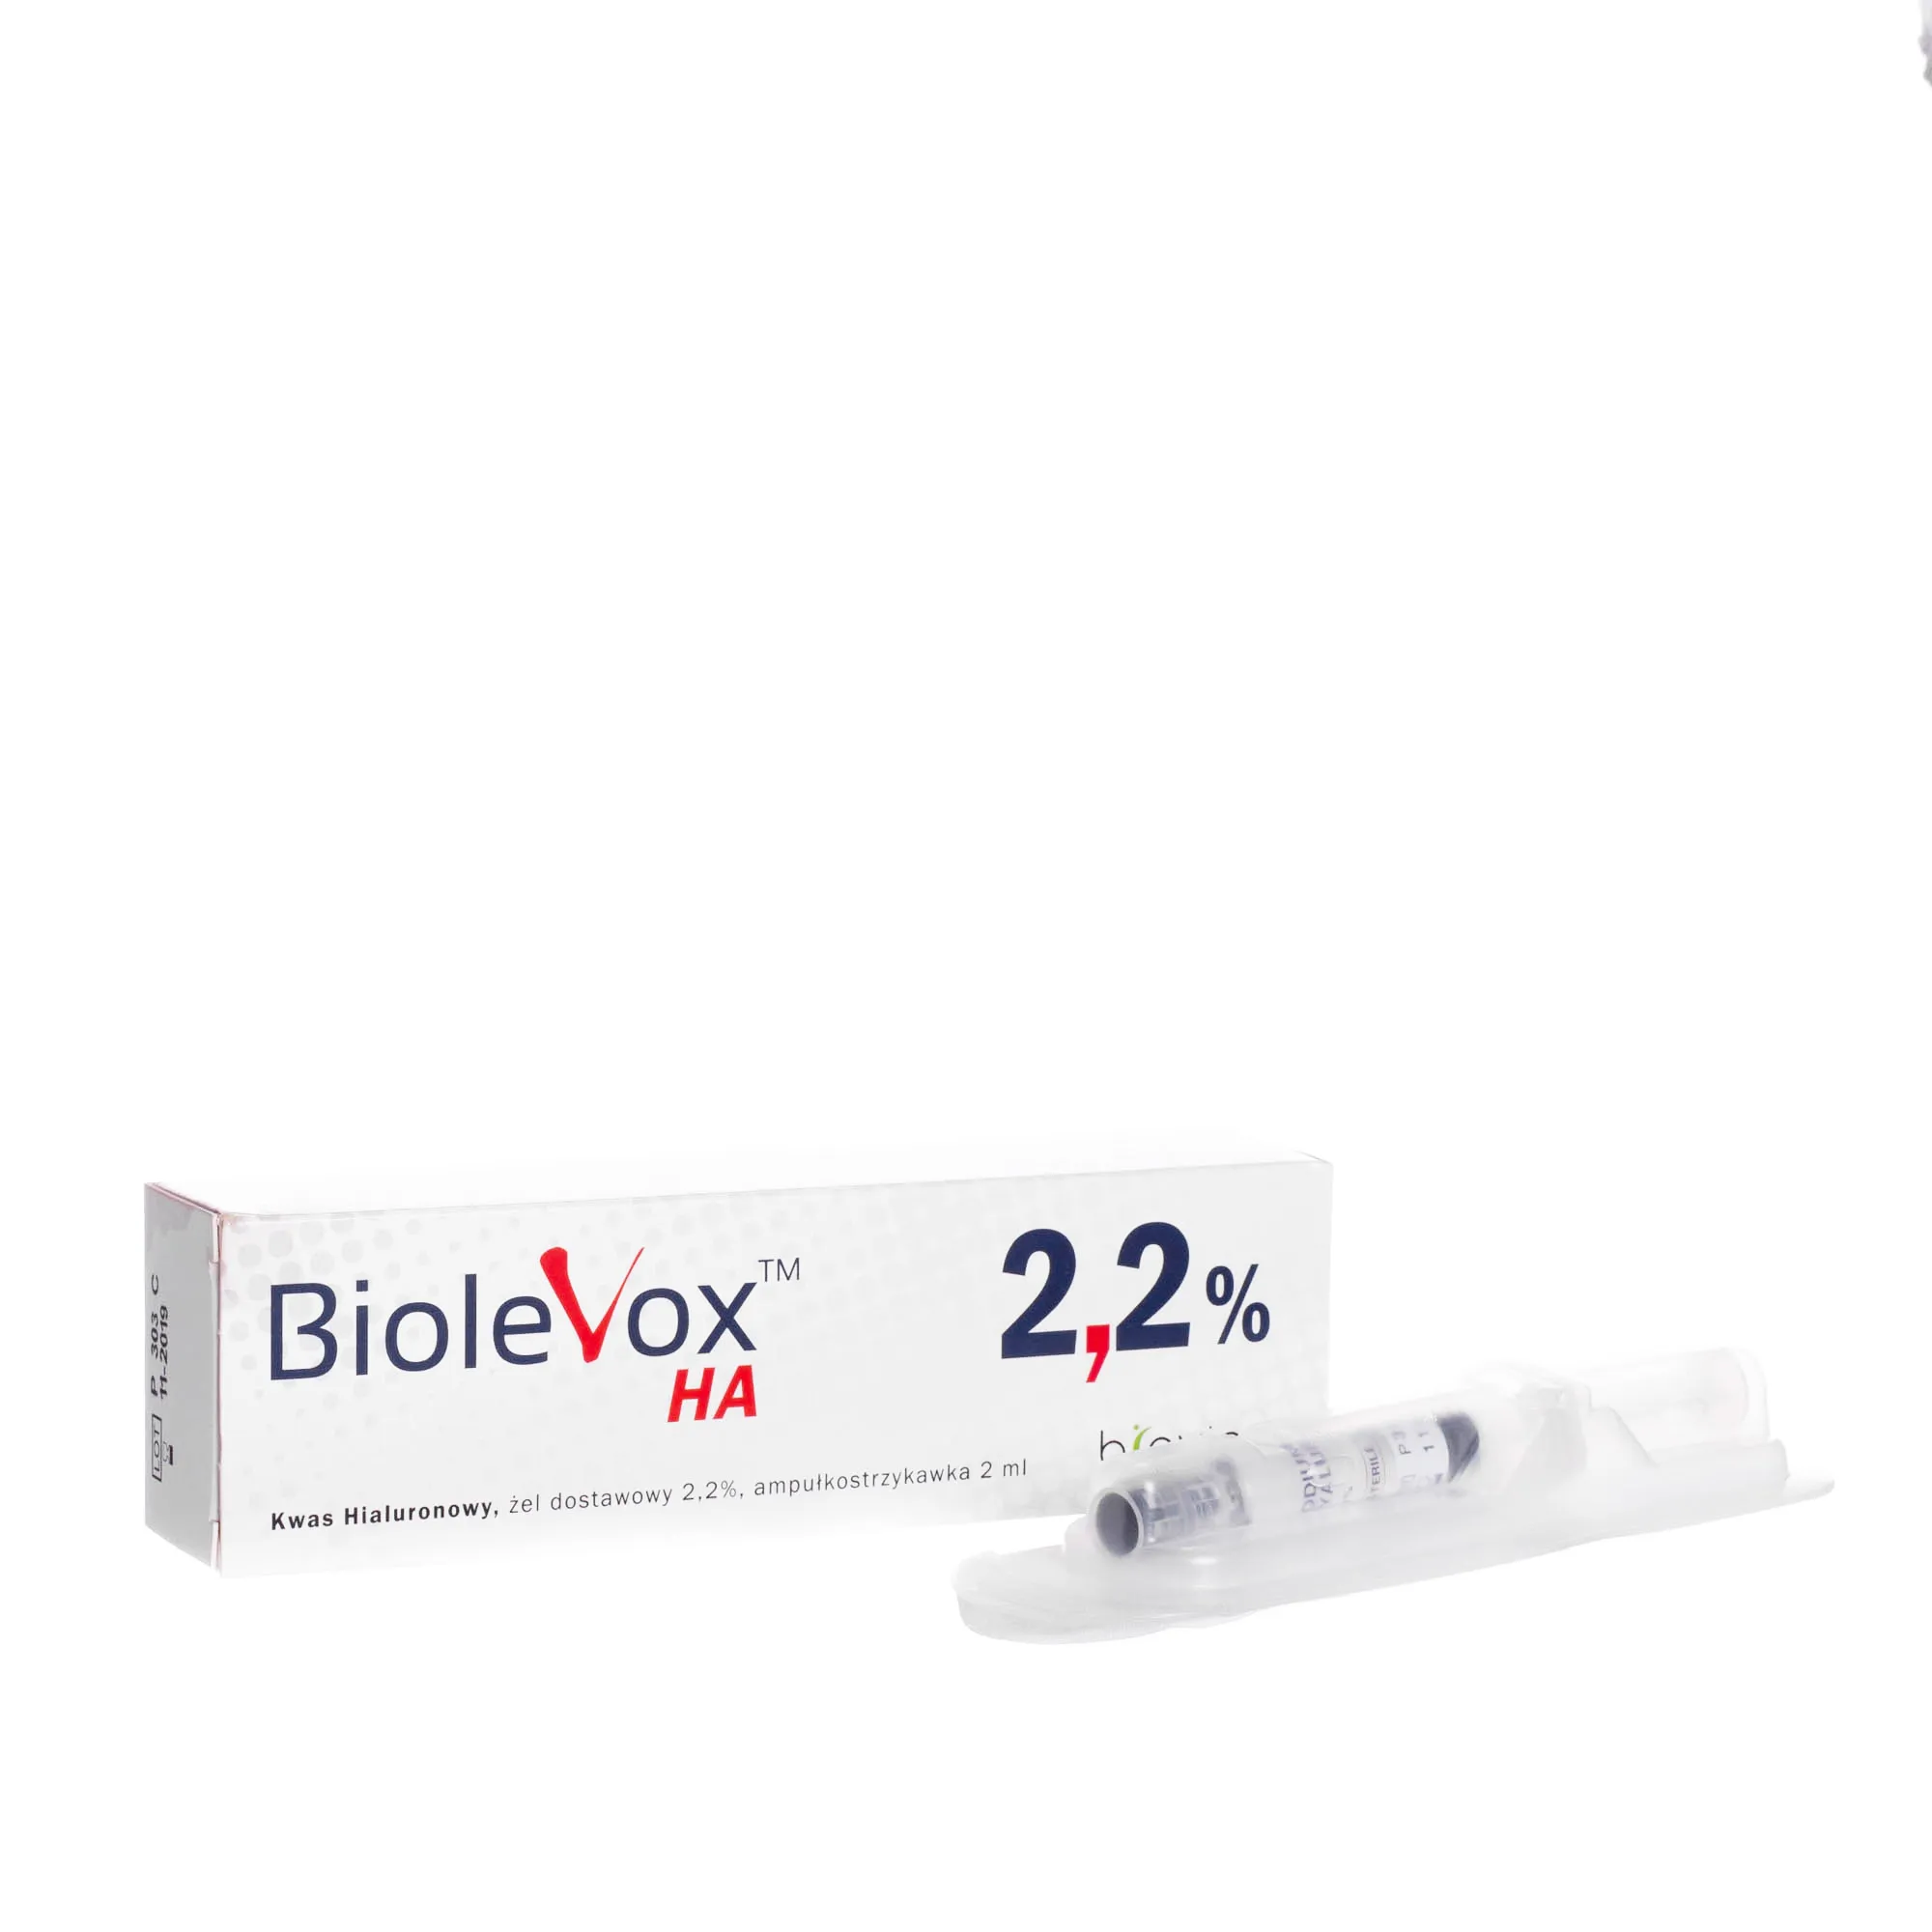 Biolevox HA, kwas hialuronowy, żel dostawowy 2,2%, ampułko strzykawka 2ml 